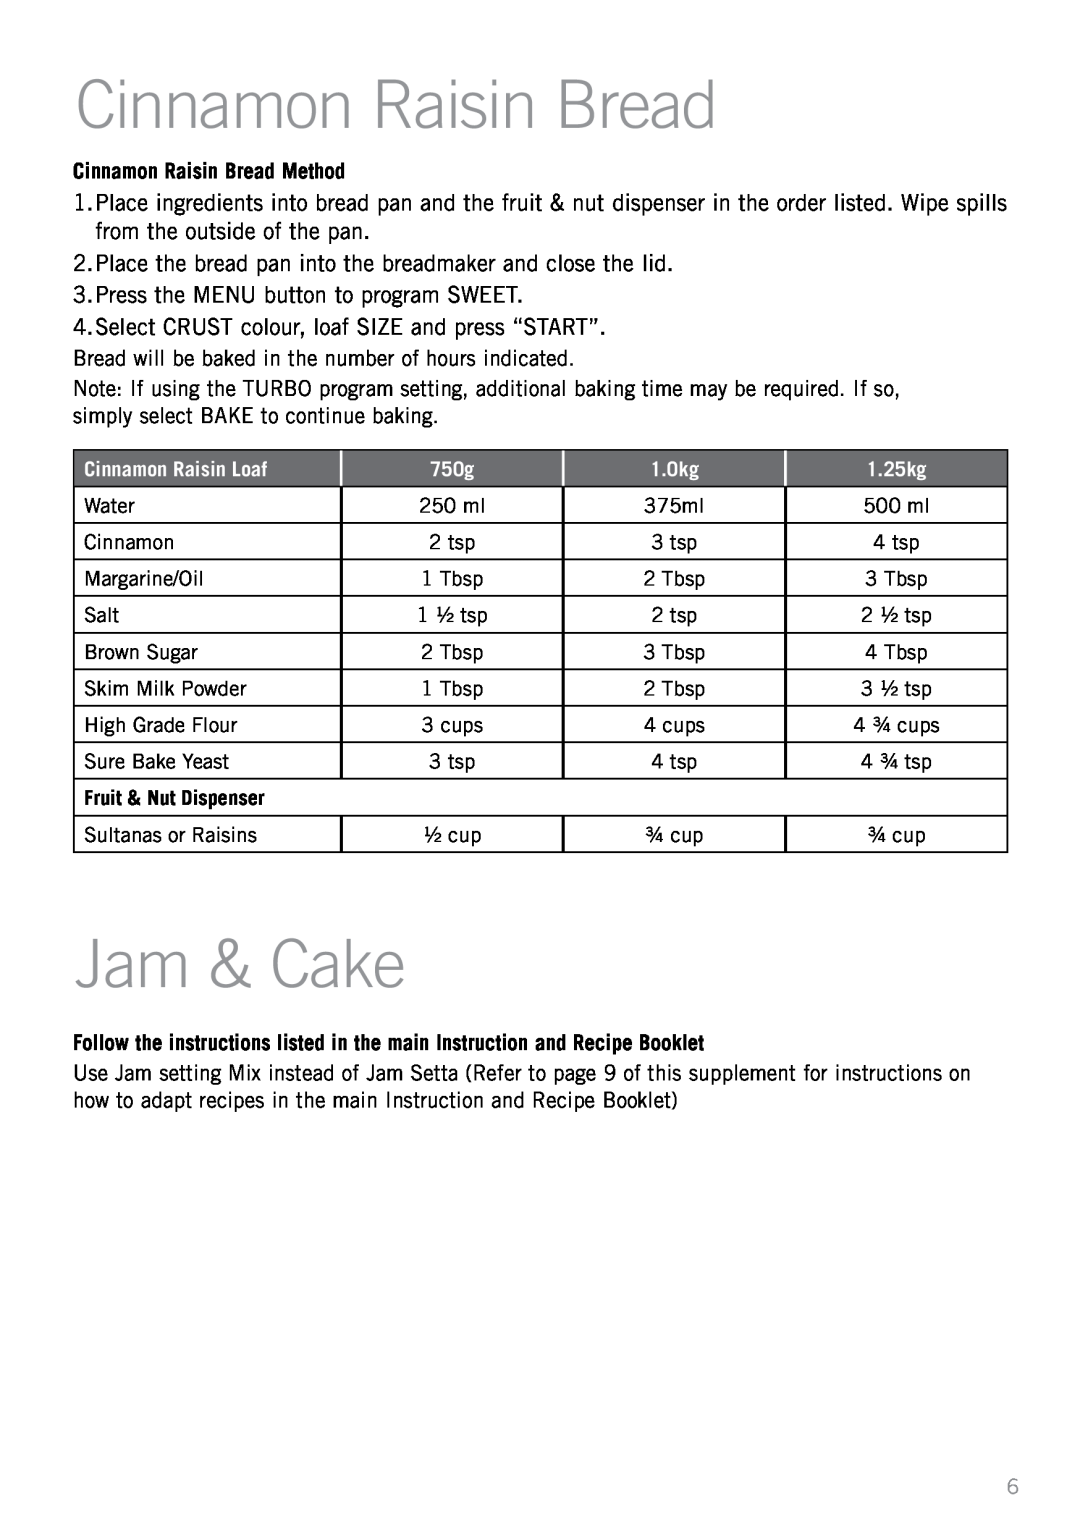 Sunbeam BM7800 manual Jam & Cake, Cinnamon Raisin Bread Method, Cinnamon Raisin Loaf, 750g, 1.0kg, 1.25kg 